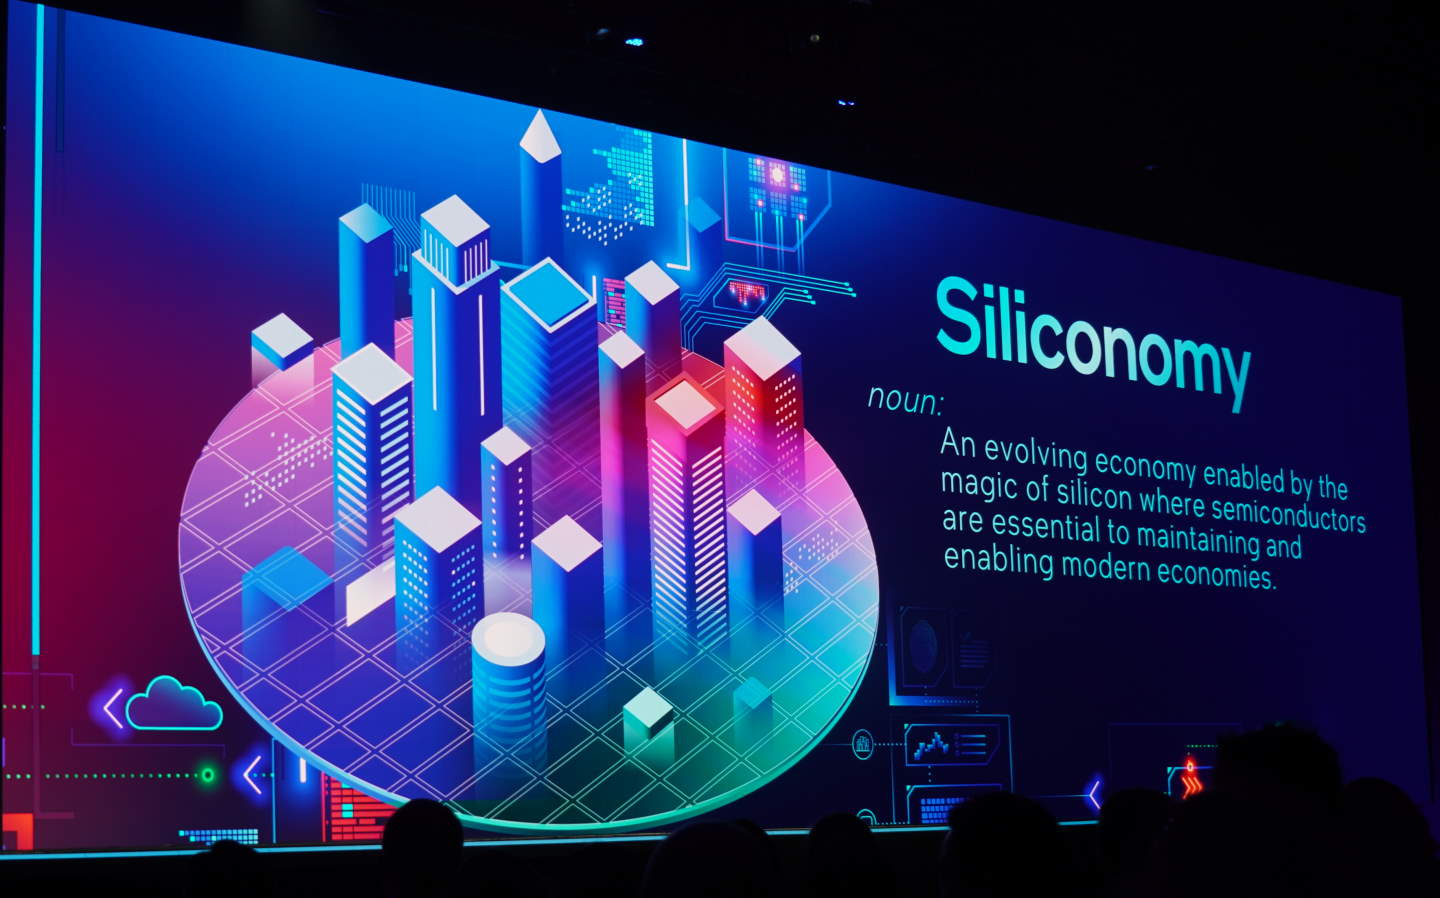 Siliconomy（矽經濟）指藉助晶片力量革新的經濟活動，也是當代經濟發展的一代趨勢。